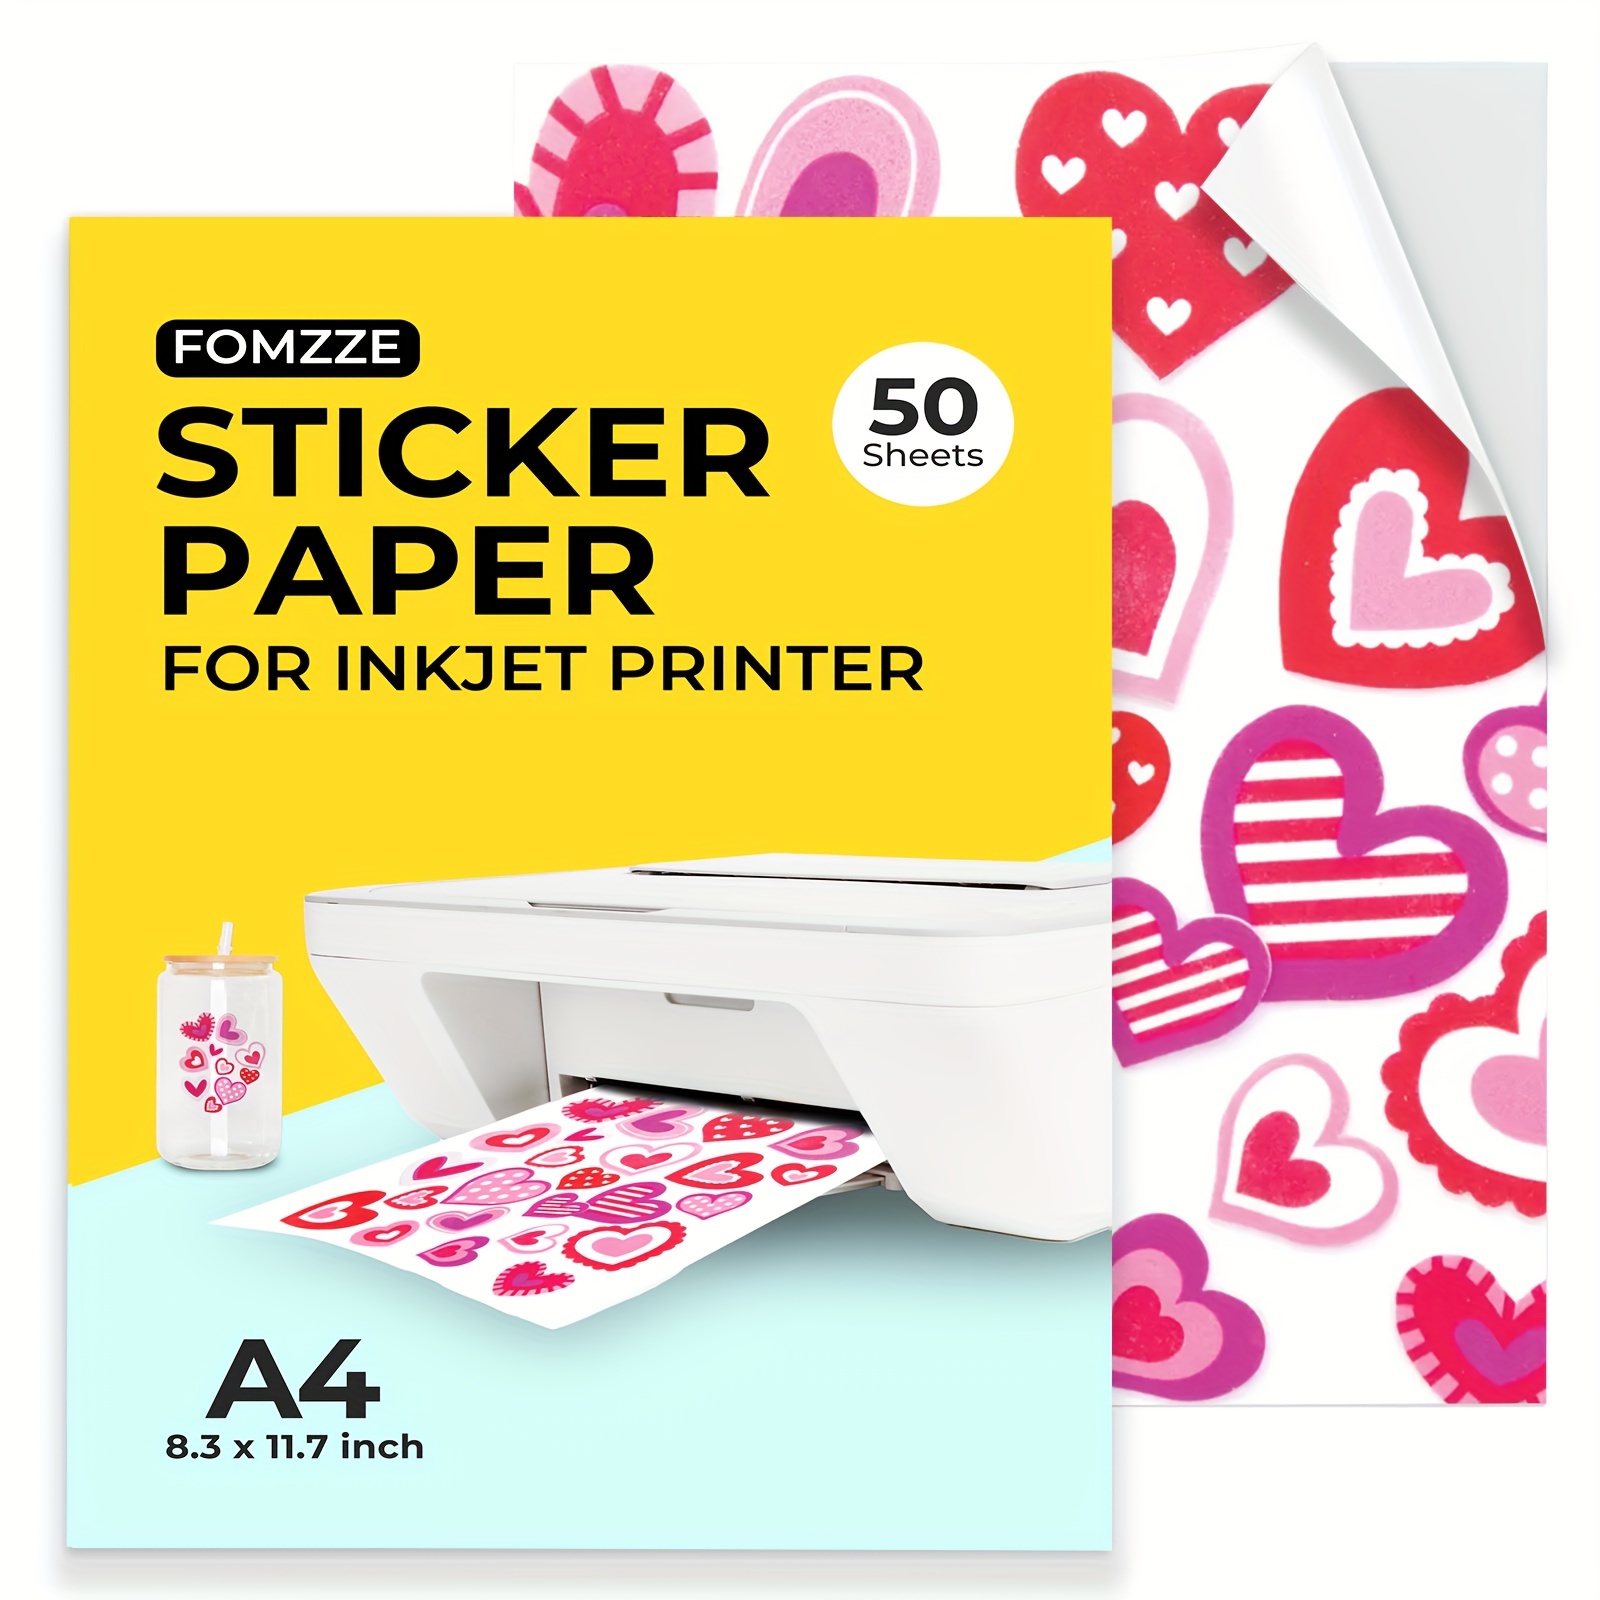 Sticker Paper Printable Vinyl for Inkjet Printer, 50 Sheets Glossy